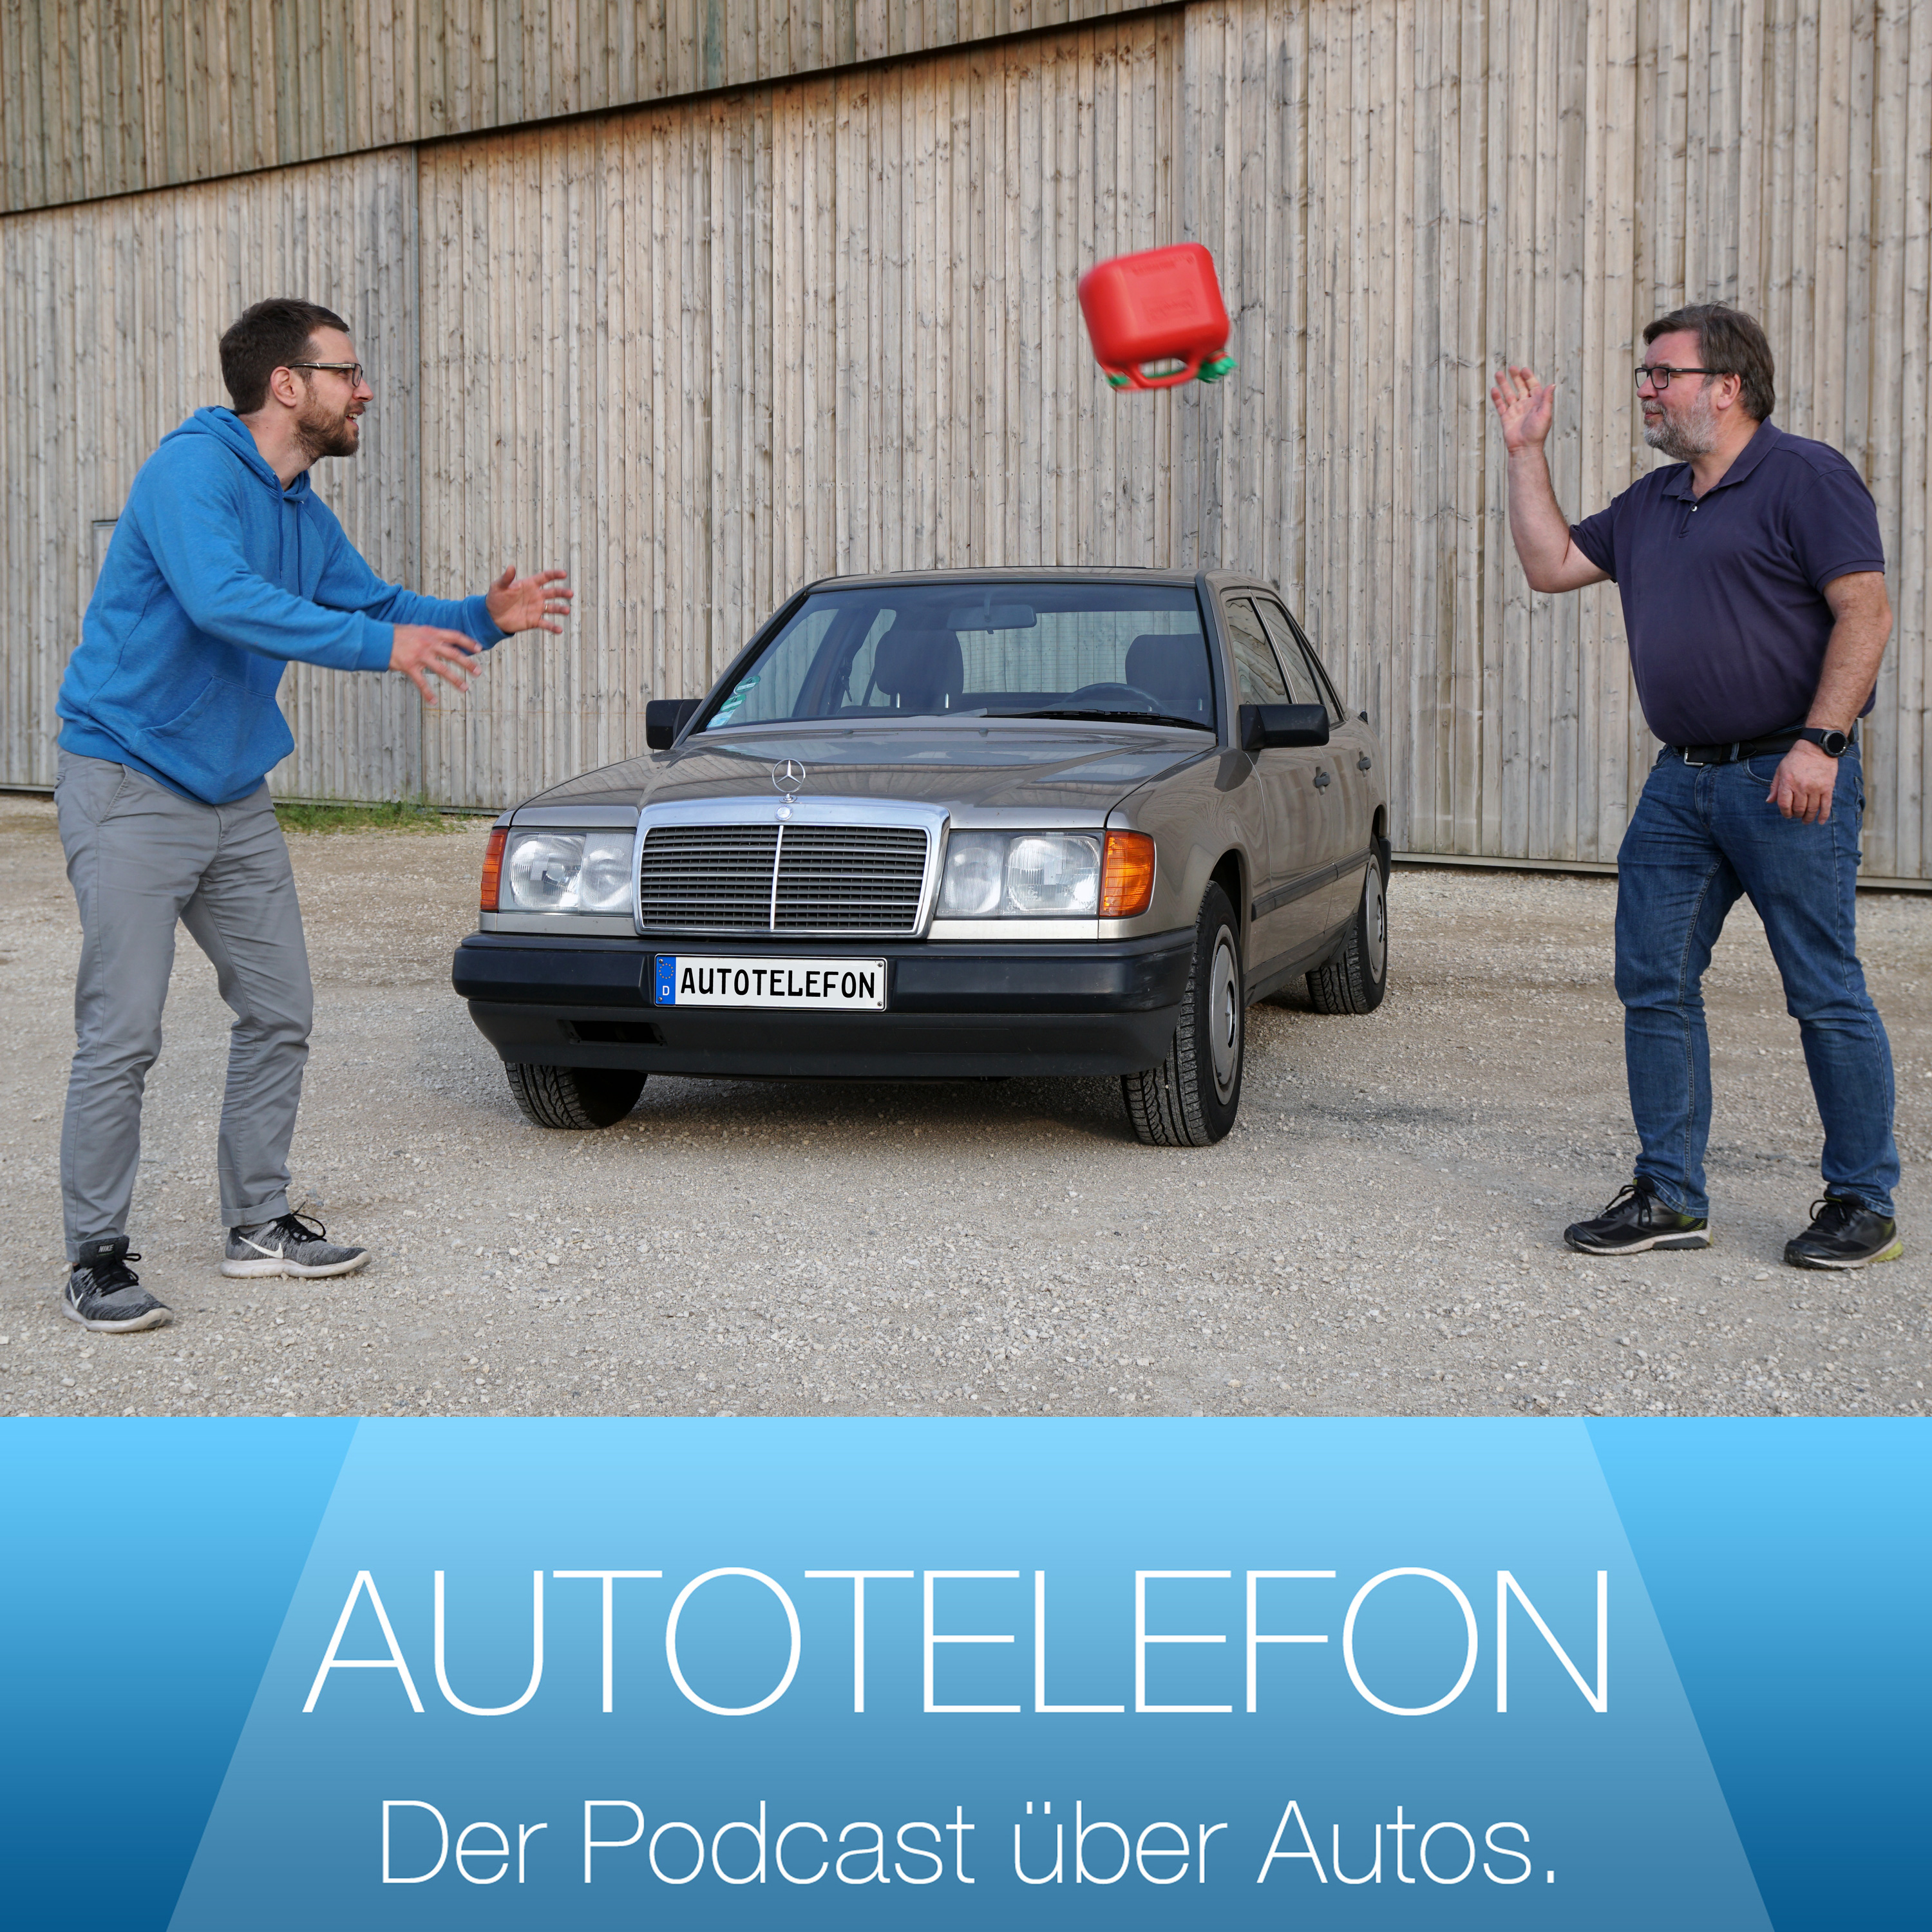 Citroen Ami meets Mercedes-Benz S-Klasse - Autotelefon - Der